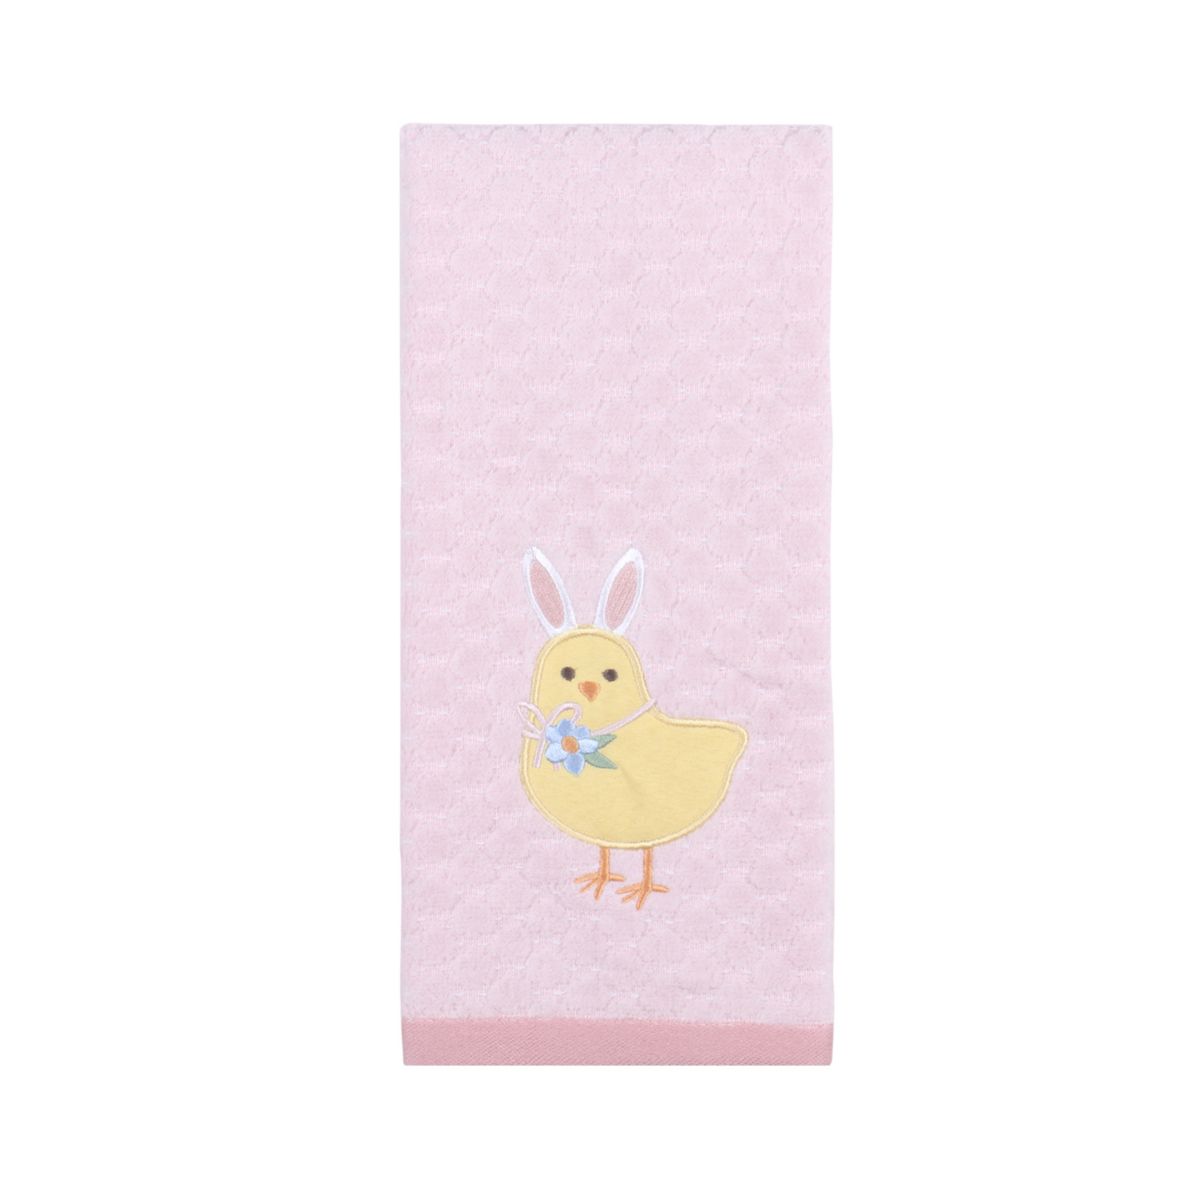 Celebrate Together™ Easter Chick Hand Towel Celebrate Together